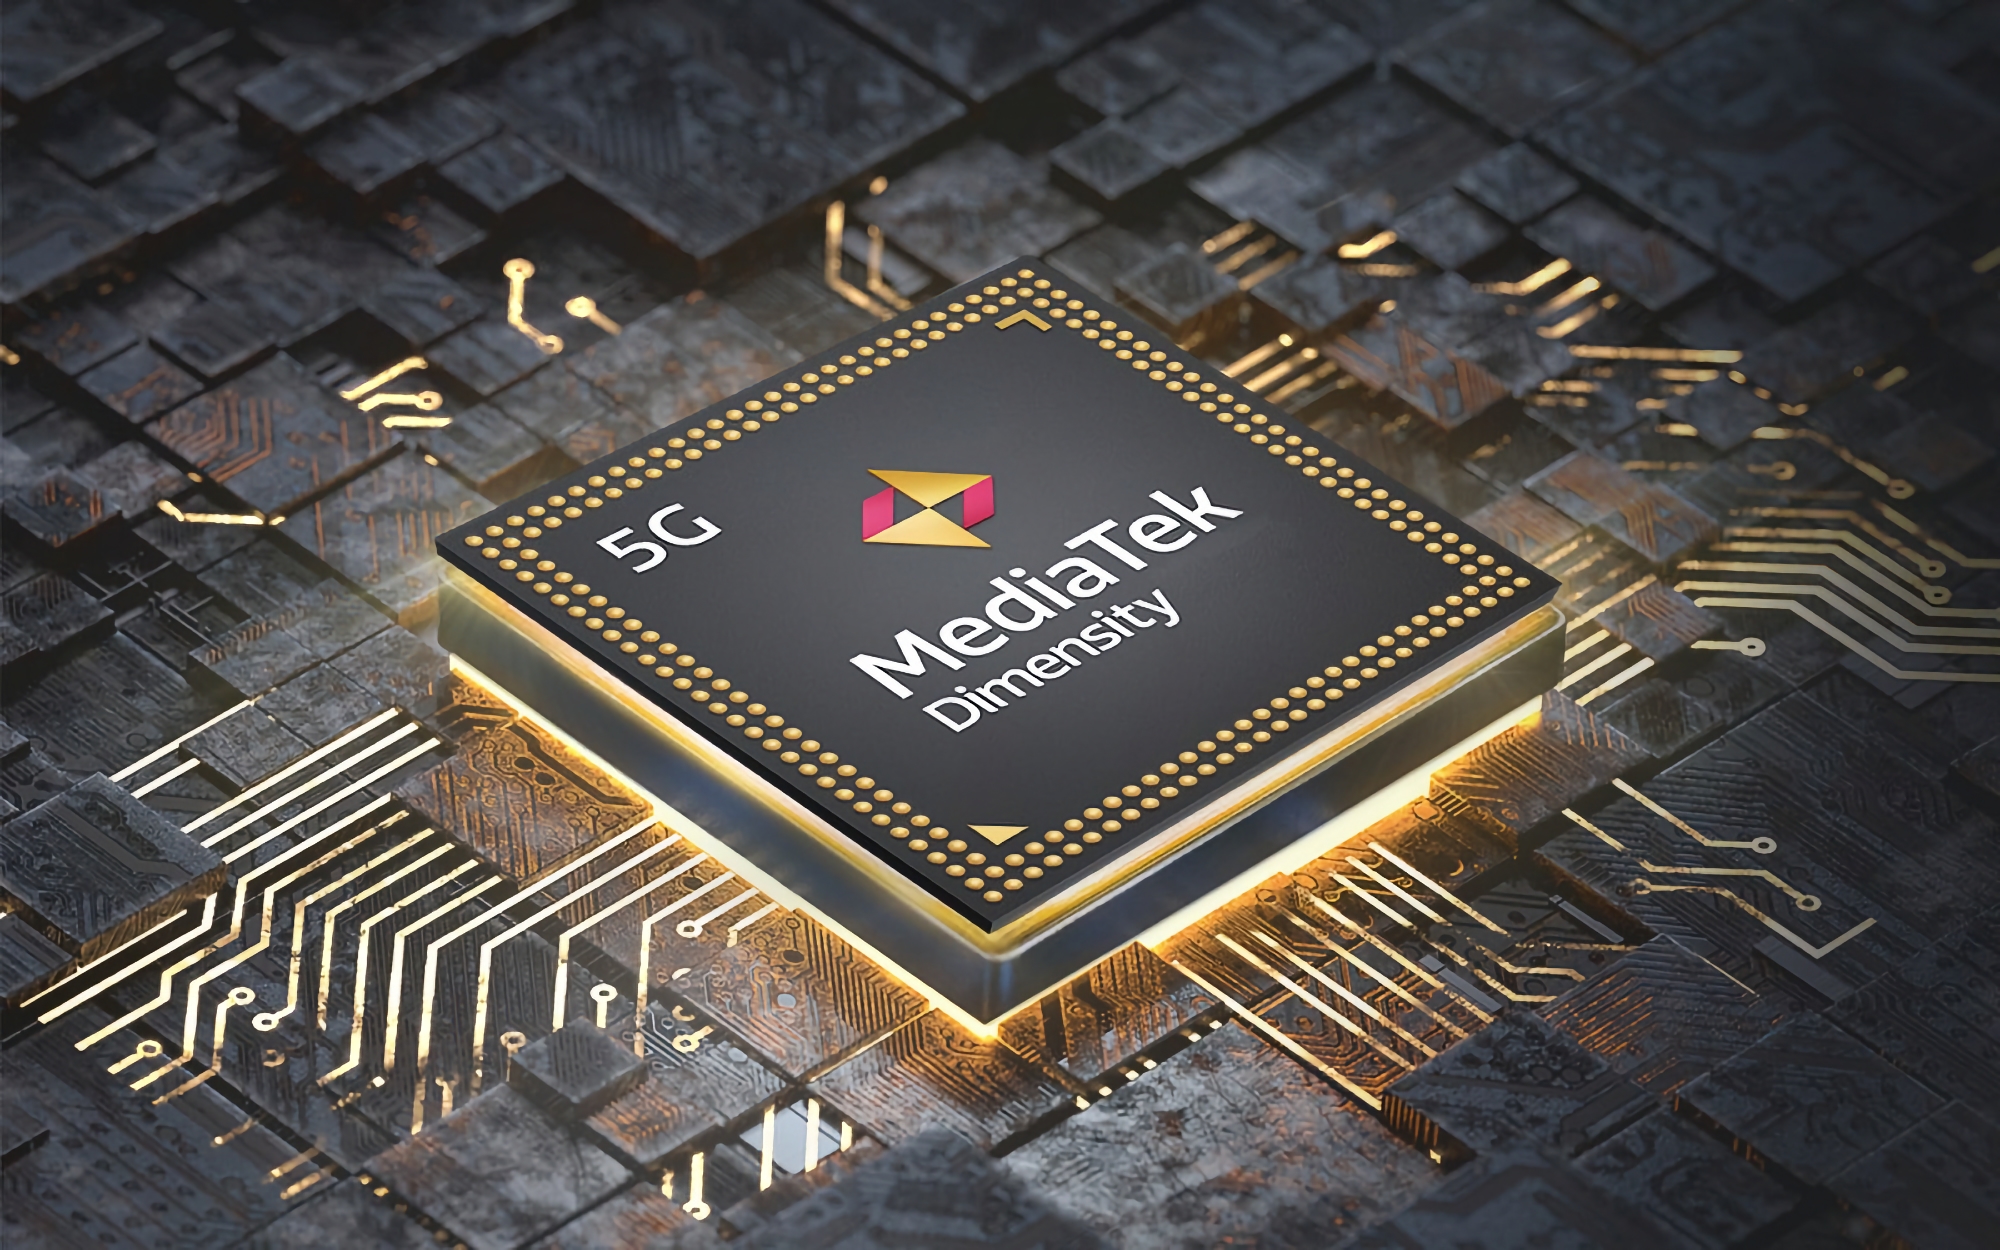 MediaTek heeft de Dimensity 7050 chip onthuld: een kopie van de Dimensity 1080 met ondersteuning voor camera's tot 200 MP en displays tot 120 Hz.